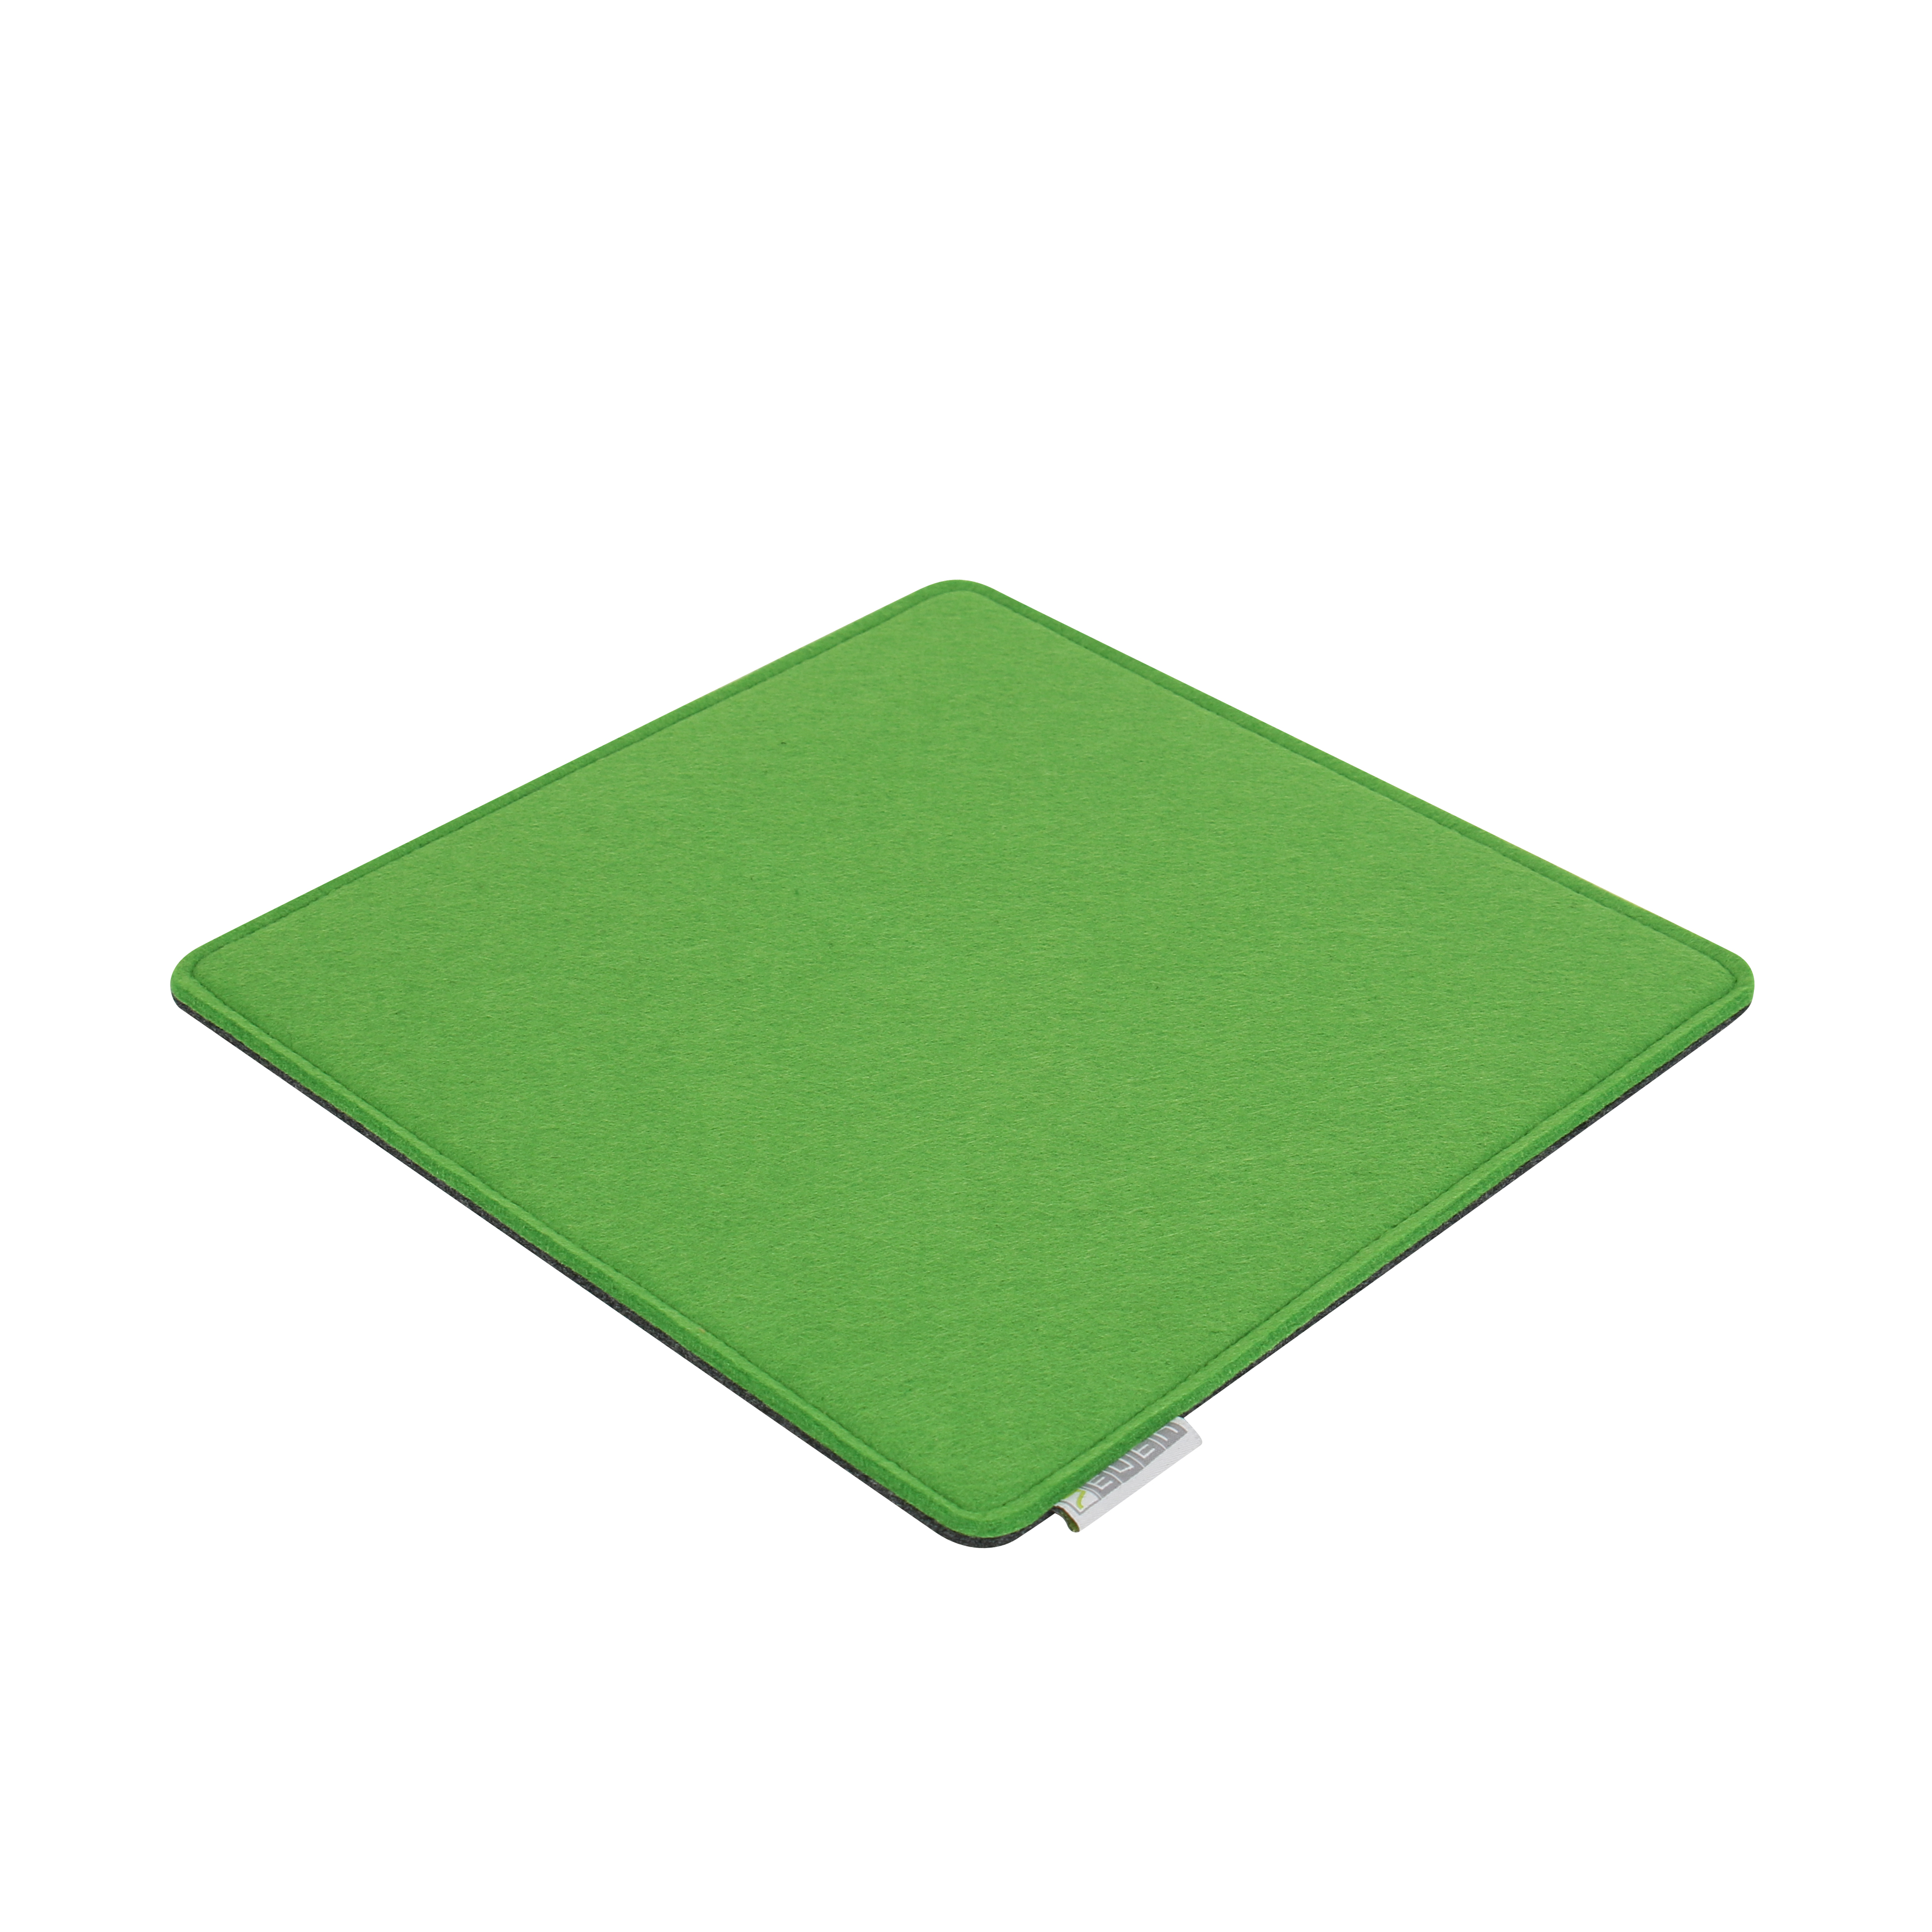 Grün/Grau - Beidseitig cm x z.B. Auflage FIlzauflage 30 Filz Hocker für Cube 4mm/4mm 30 7EVEN